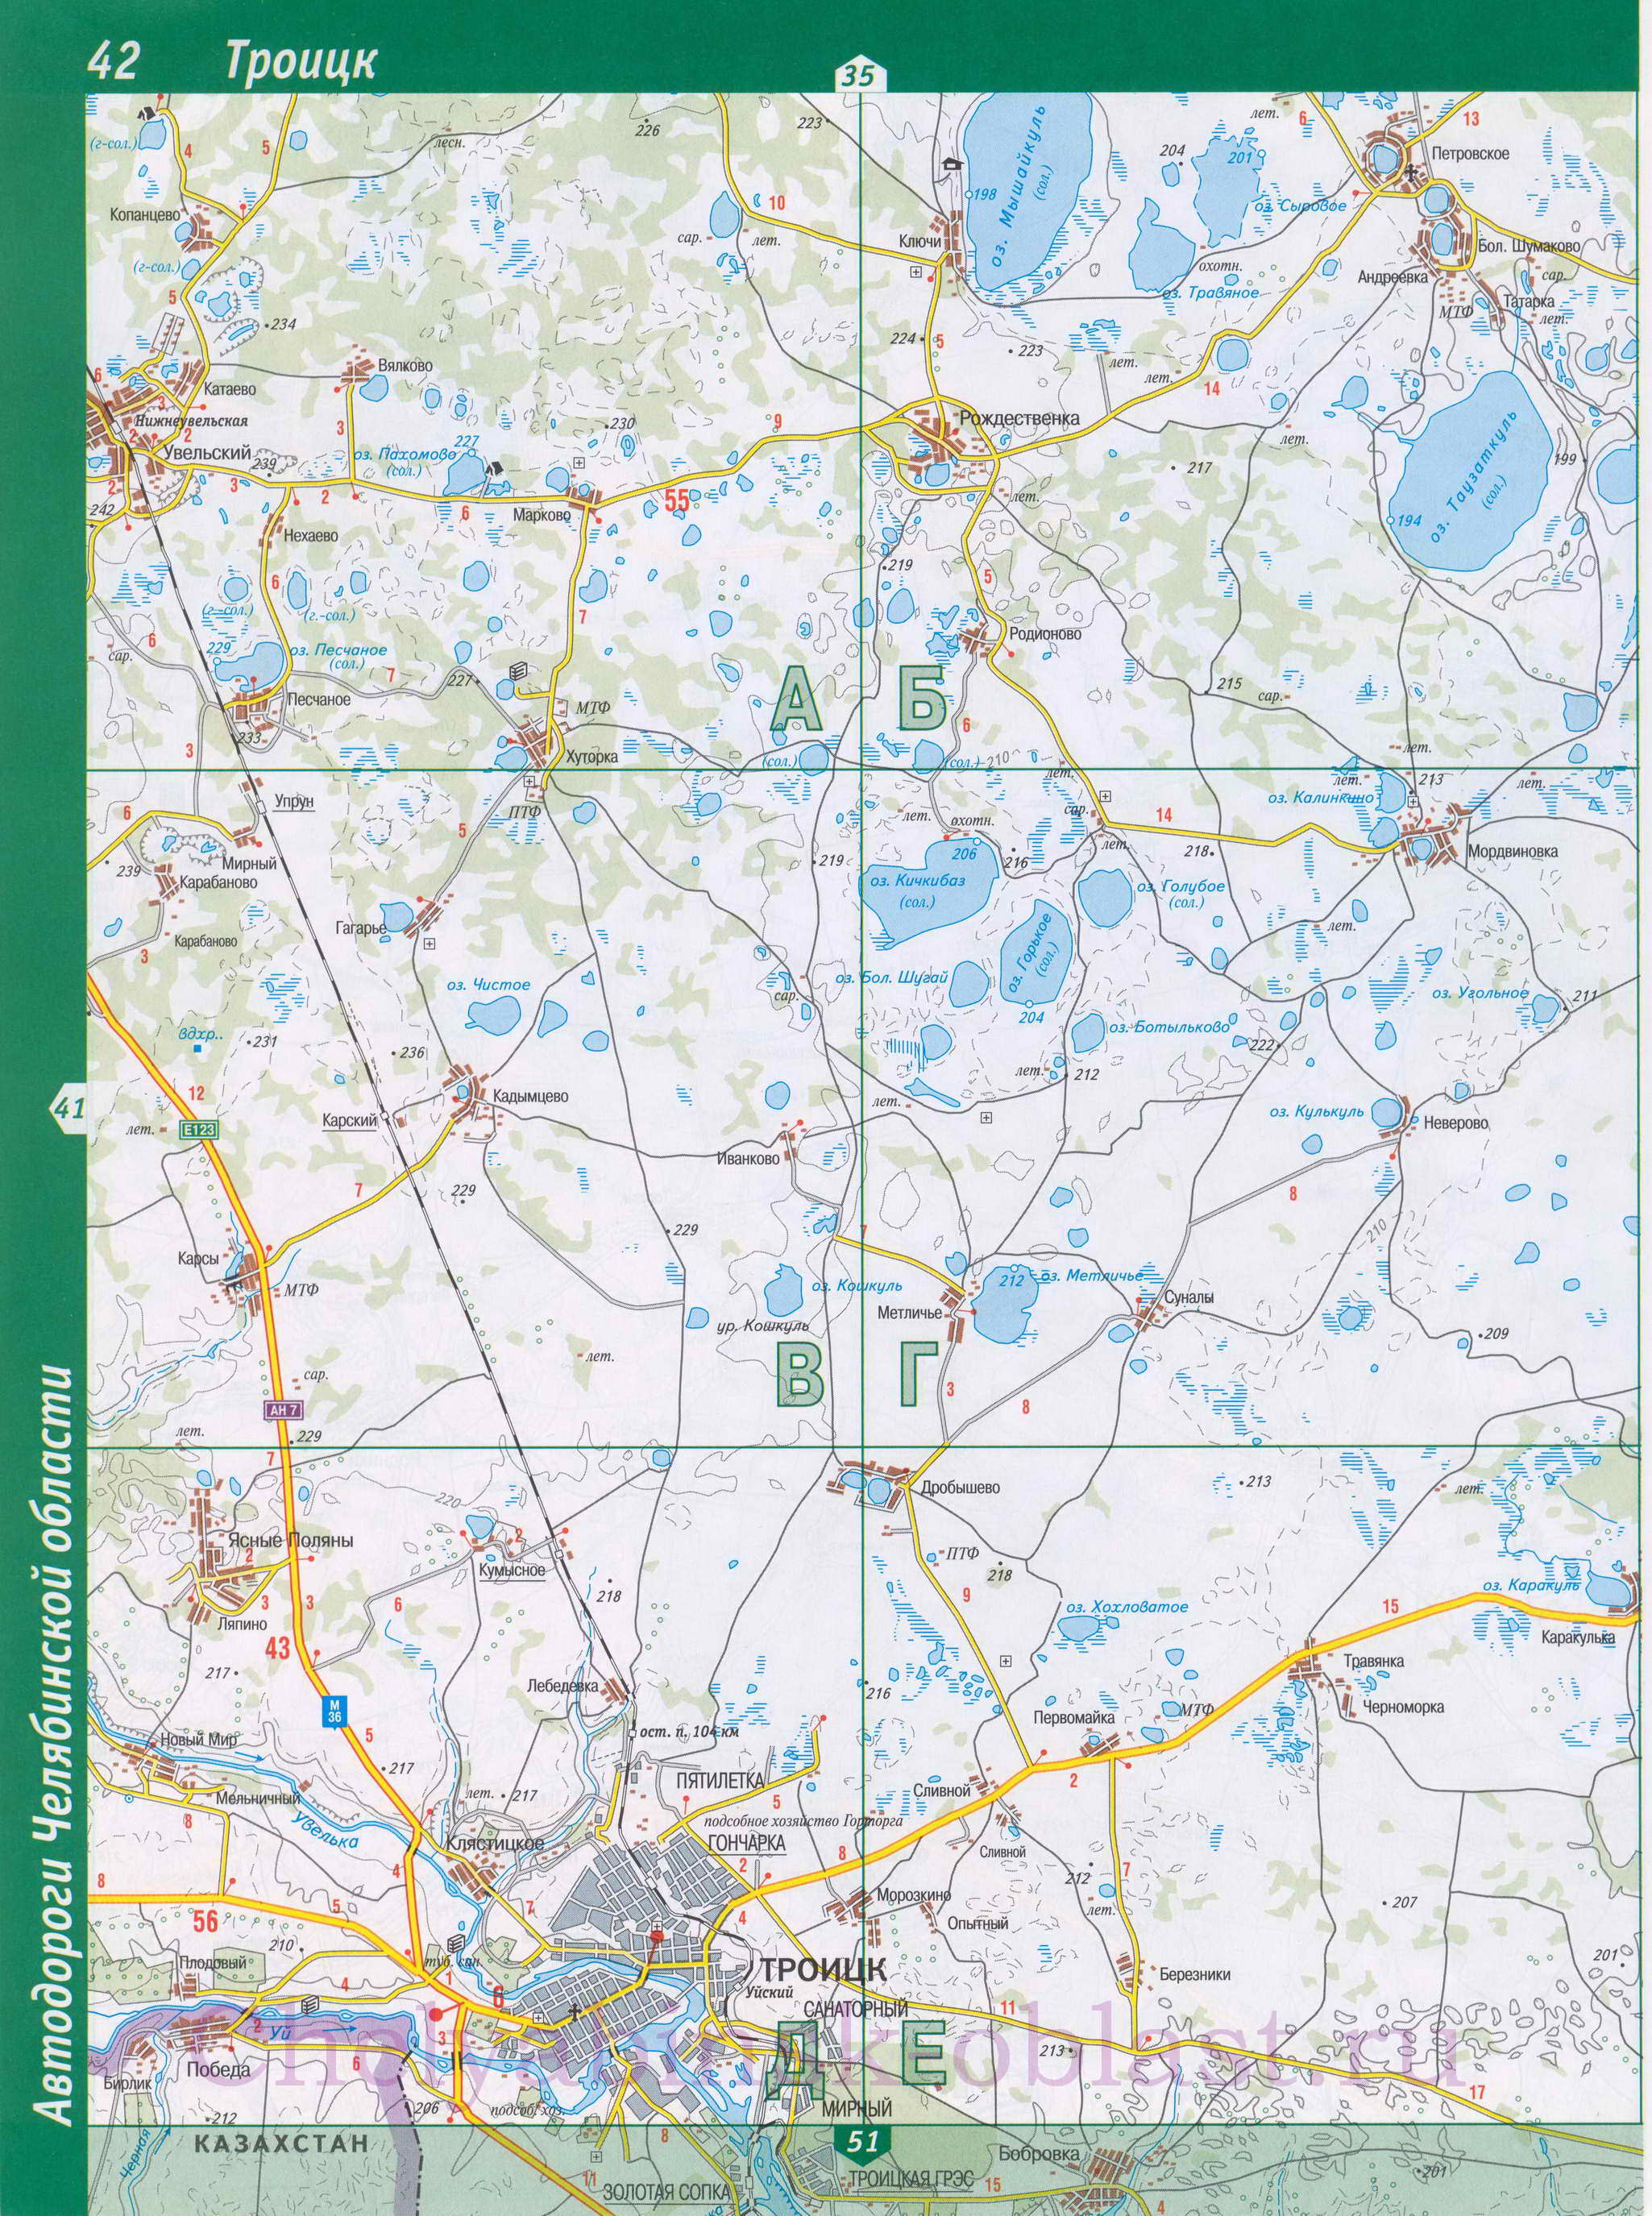 Автомобильная карта Троицка. подробная карта автомобильных дорог Троицка, Челябинская область, A0 - 